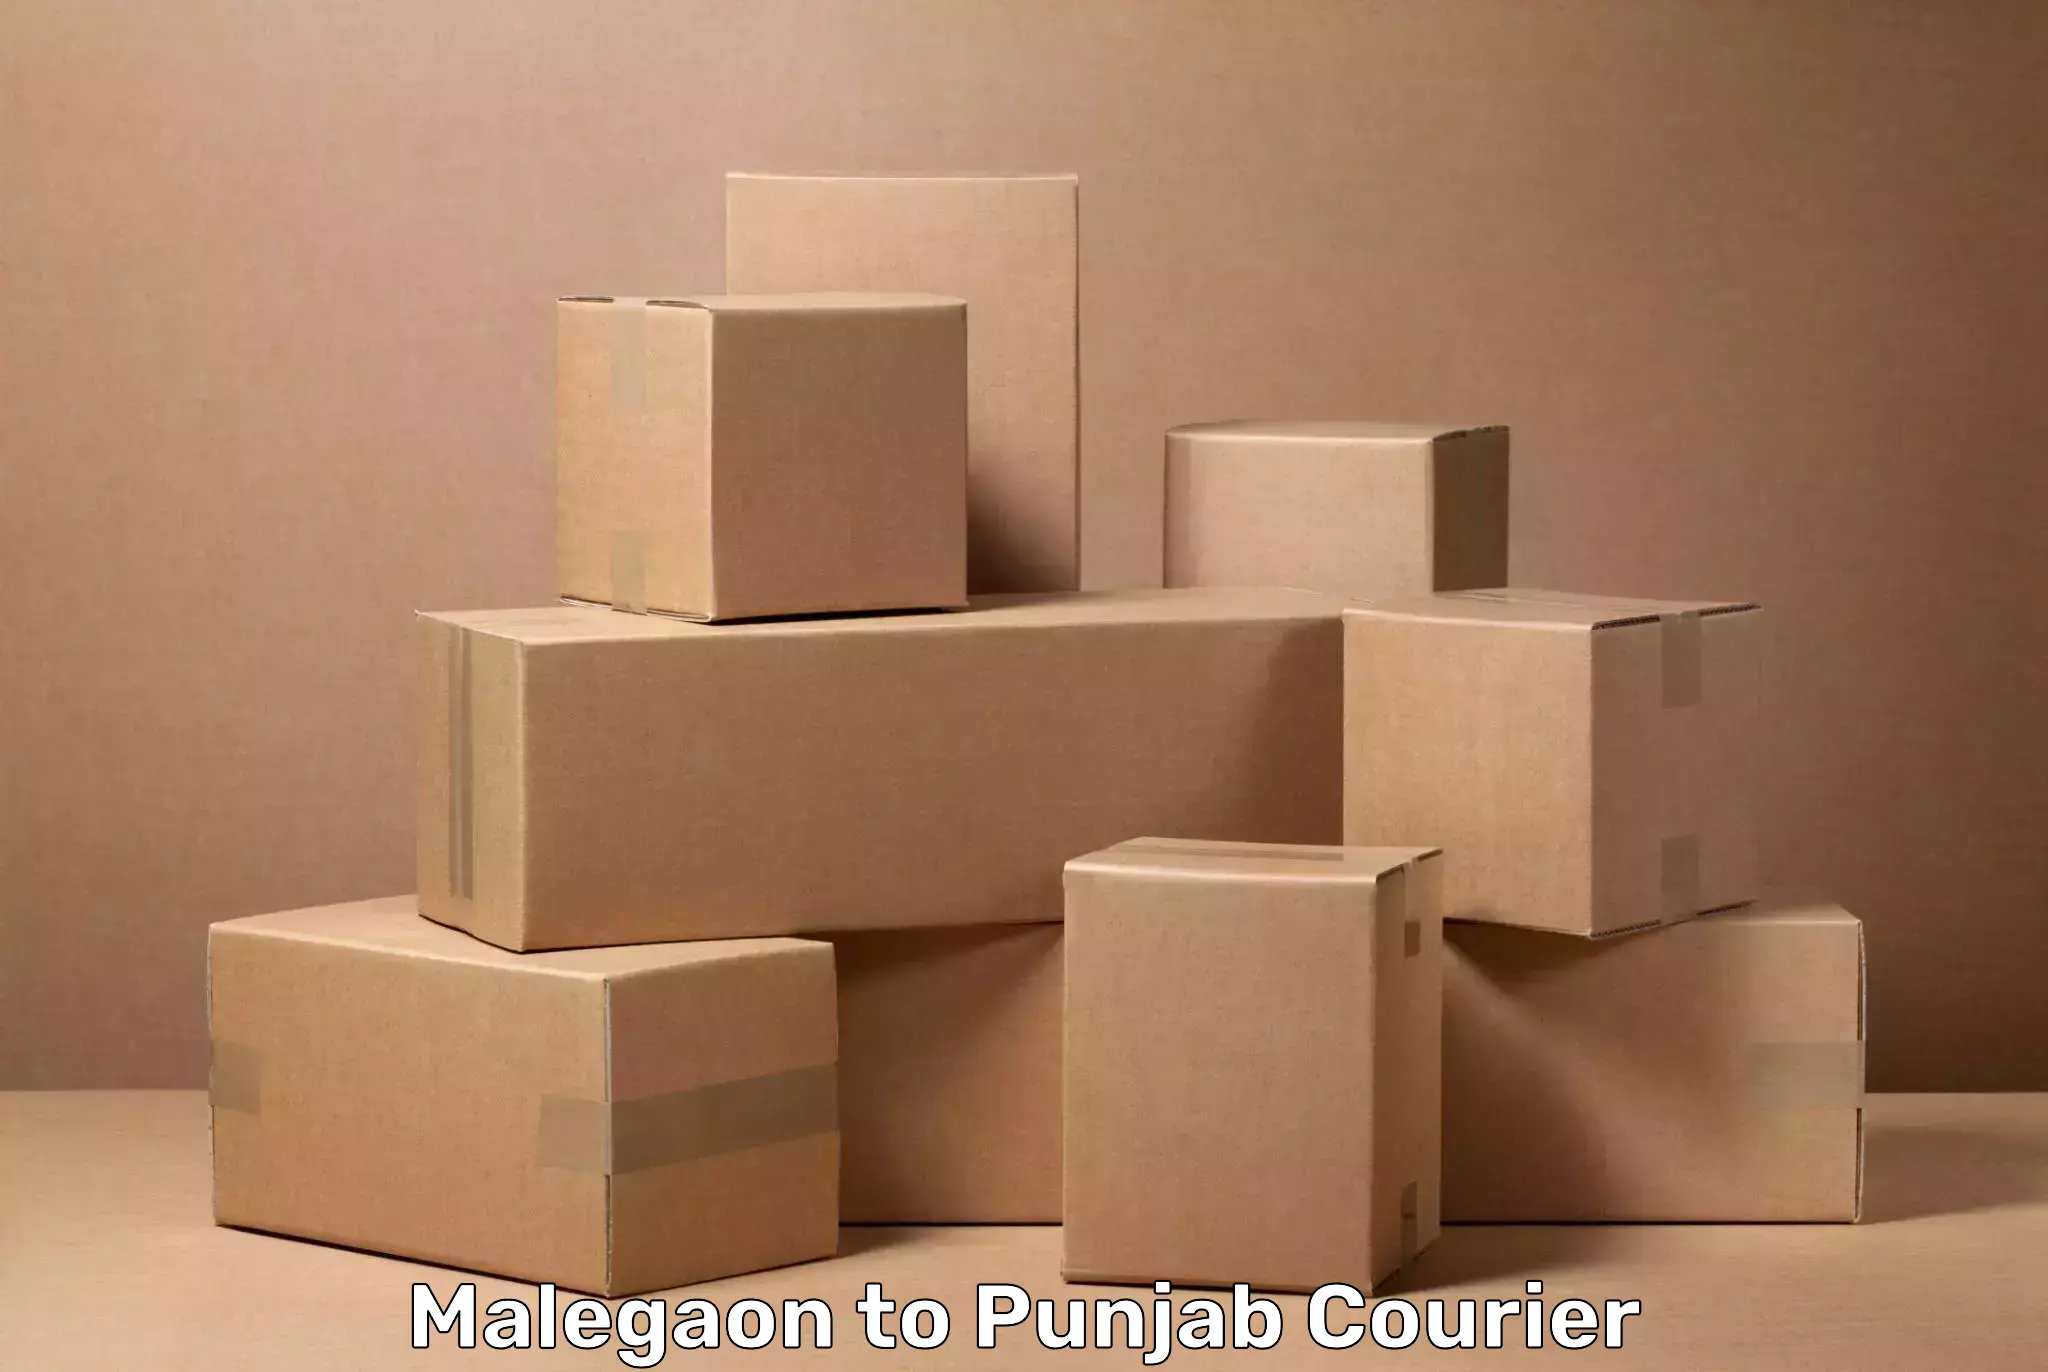 Baggage shipping logistics Malegaon to Mandi Gobindgarh